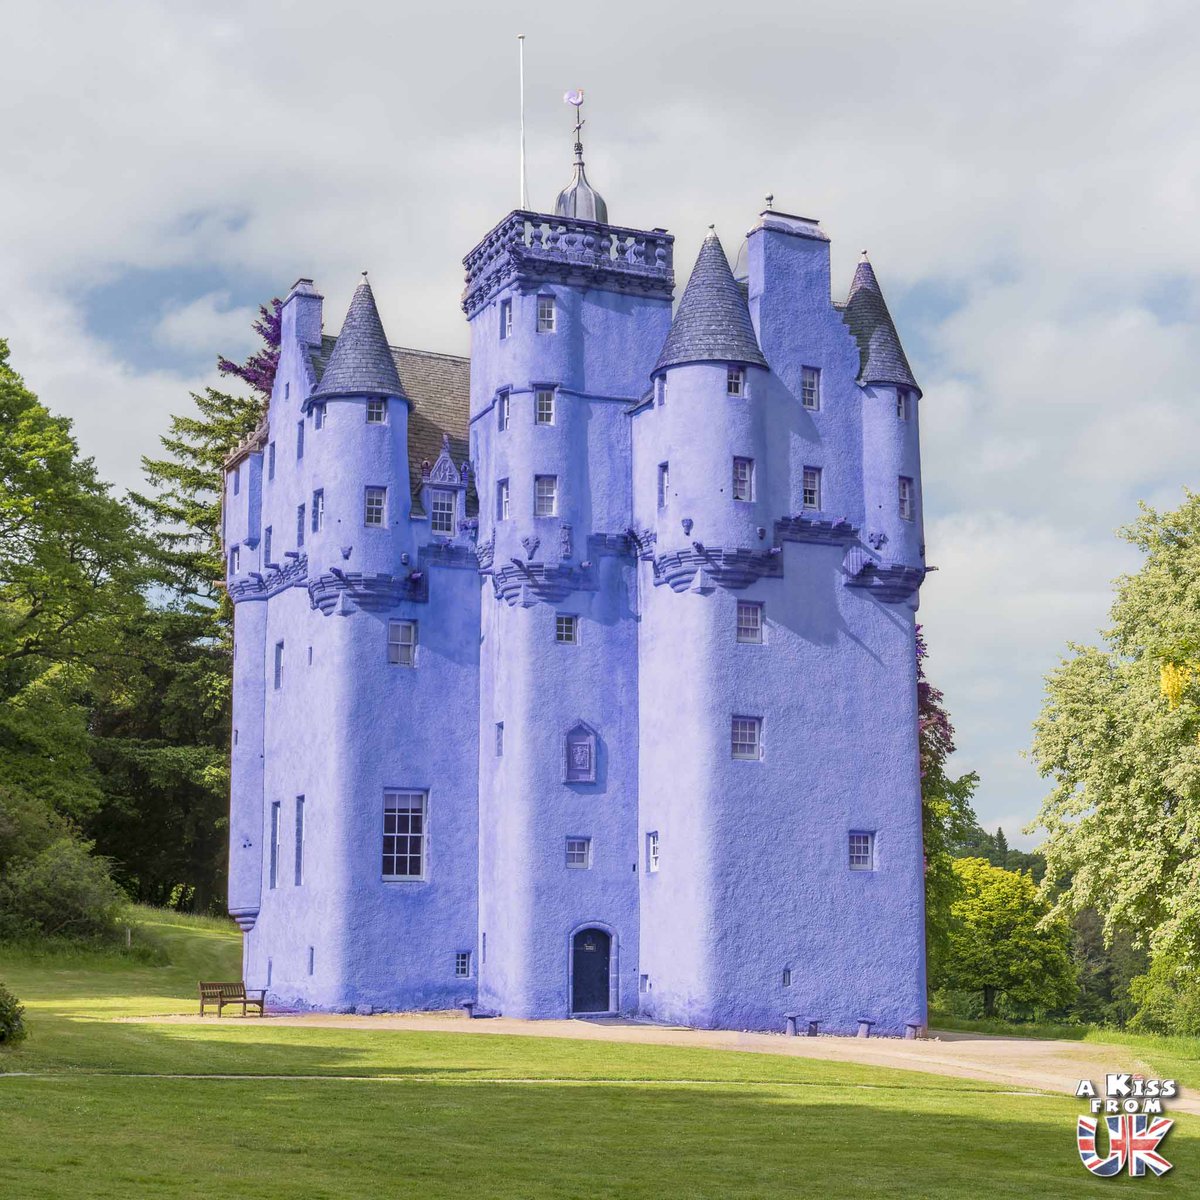 Après des mois de travaux, le @N_T_S se prépare à rouvrir le château de Craigievar au public. 🏴󠁧󠁢󠁳󠁣󠁴󠁿 La couleur rose originelle a été remplacée par un violet pastel qui rend ce château écossais encore plus unique 🎨🤩 Qu'en pensez-vous ? #VisitScotland @VisitScotland @visitabdn